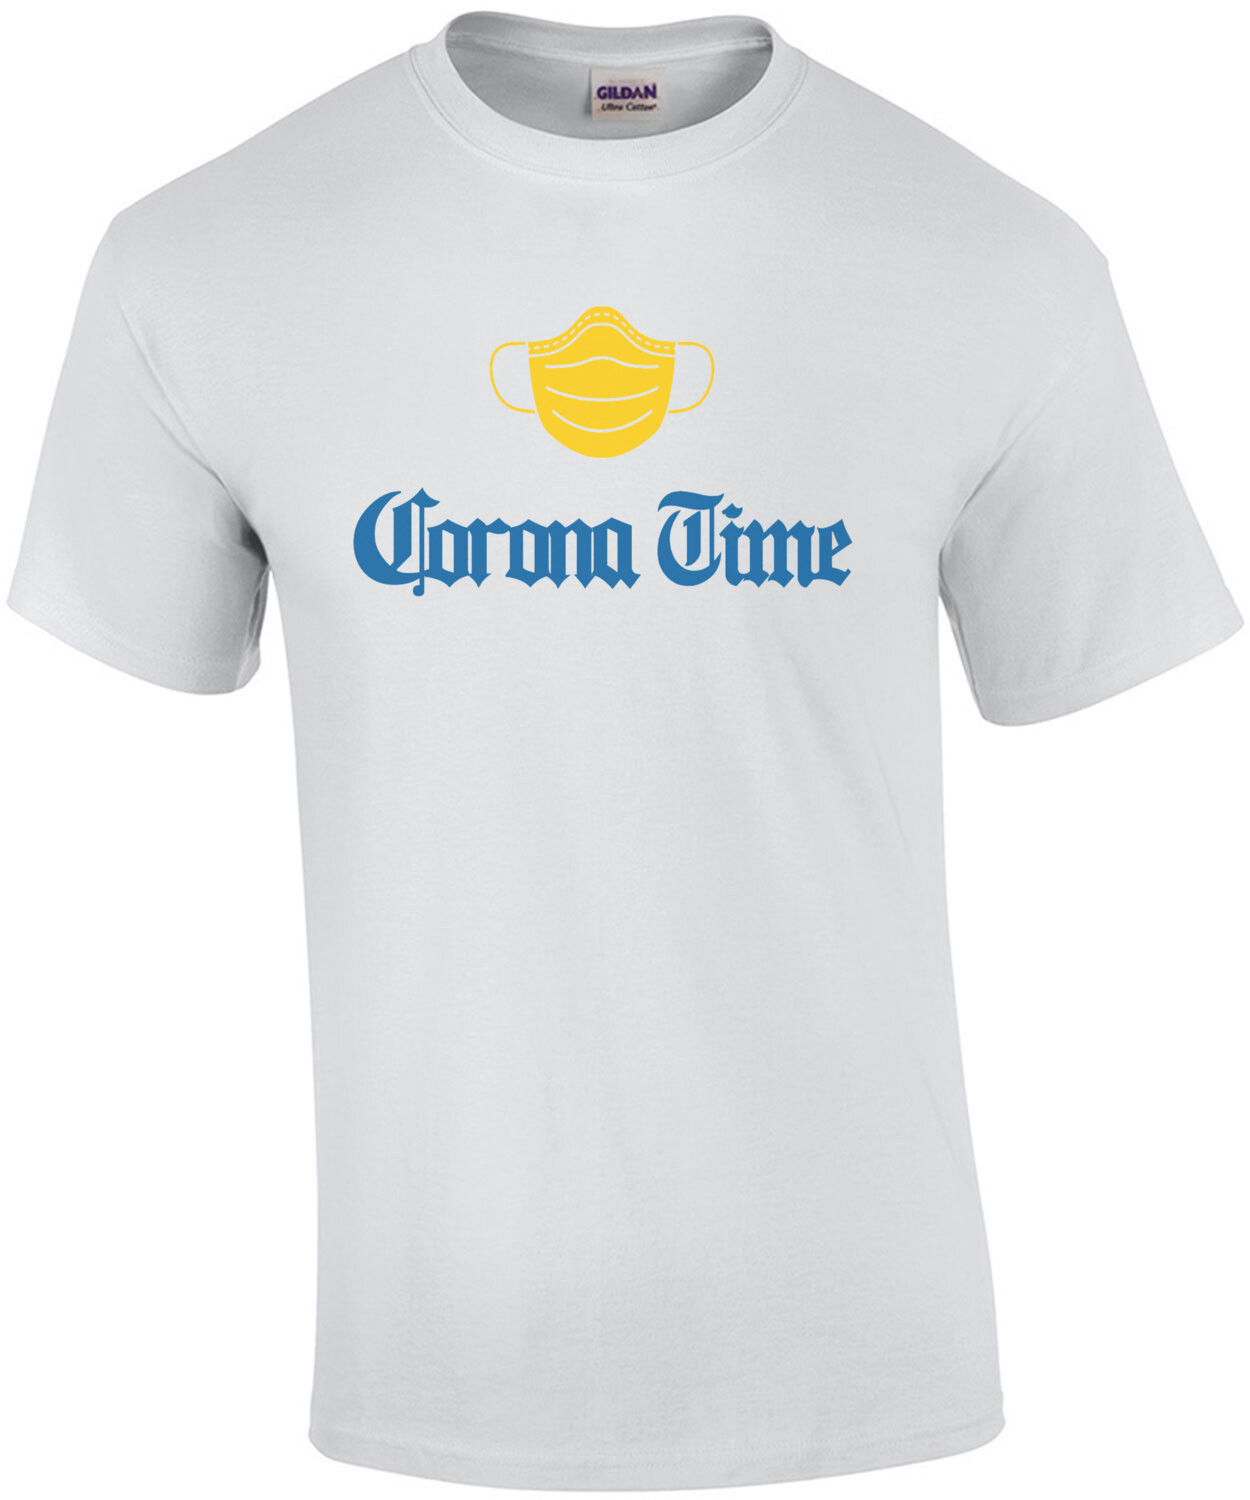 Corona Time - Coronavirus T-Shirt